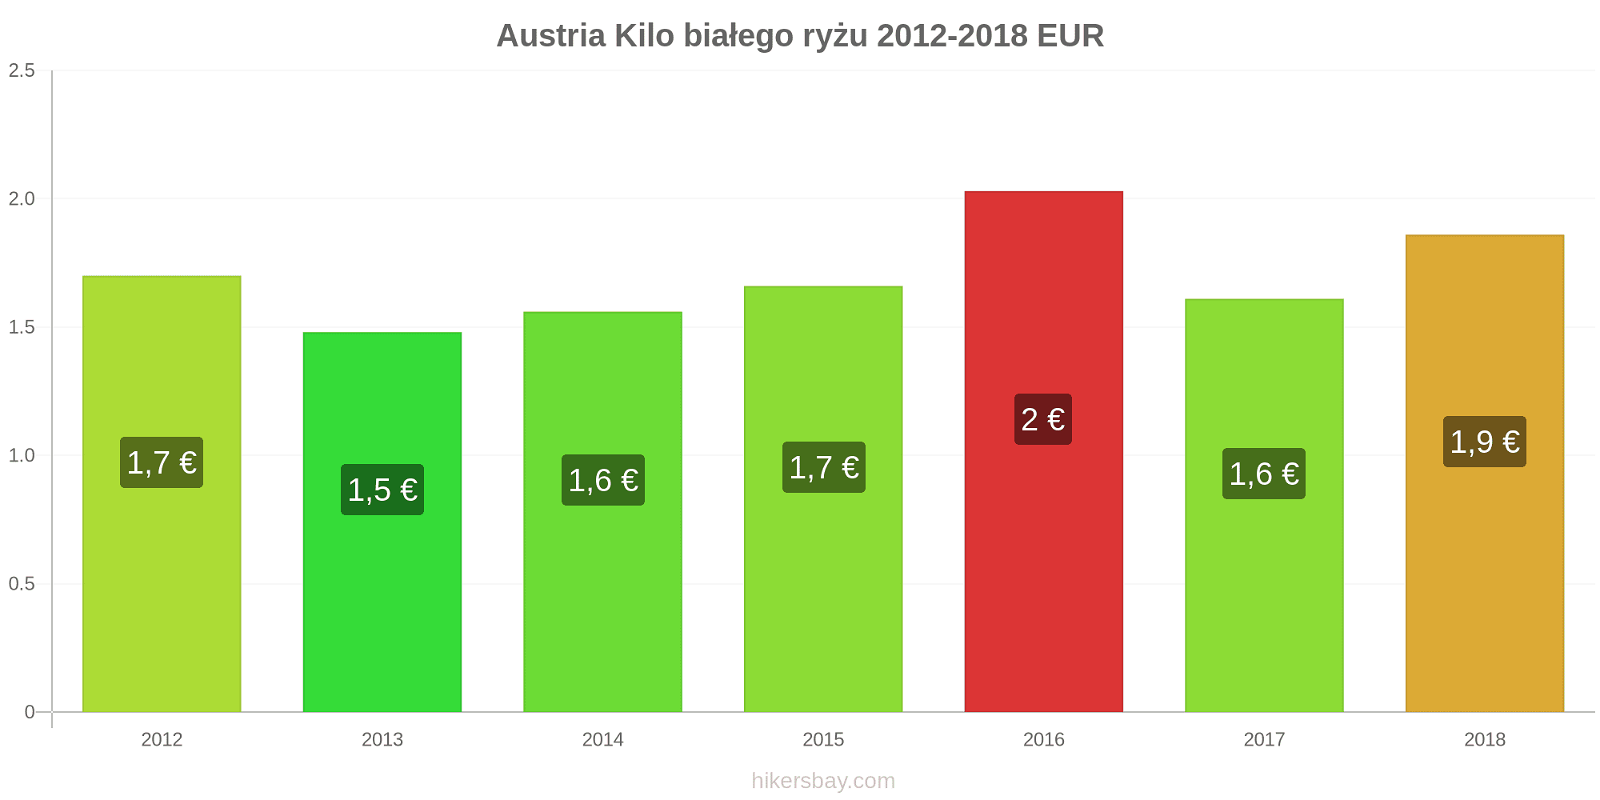 Austria zmiany cen Kilo białego ryżu hikersbay.com